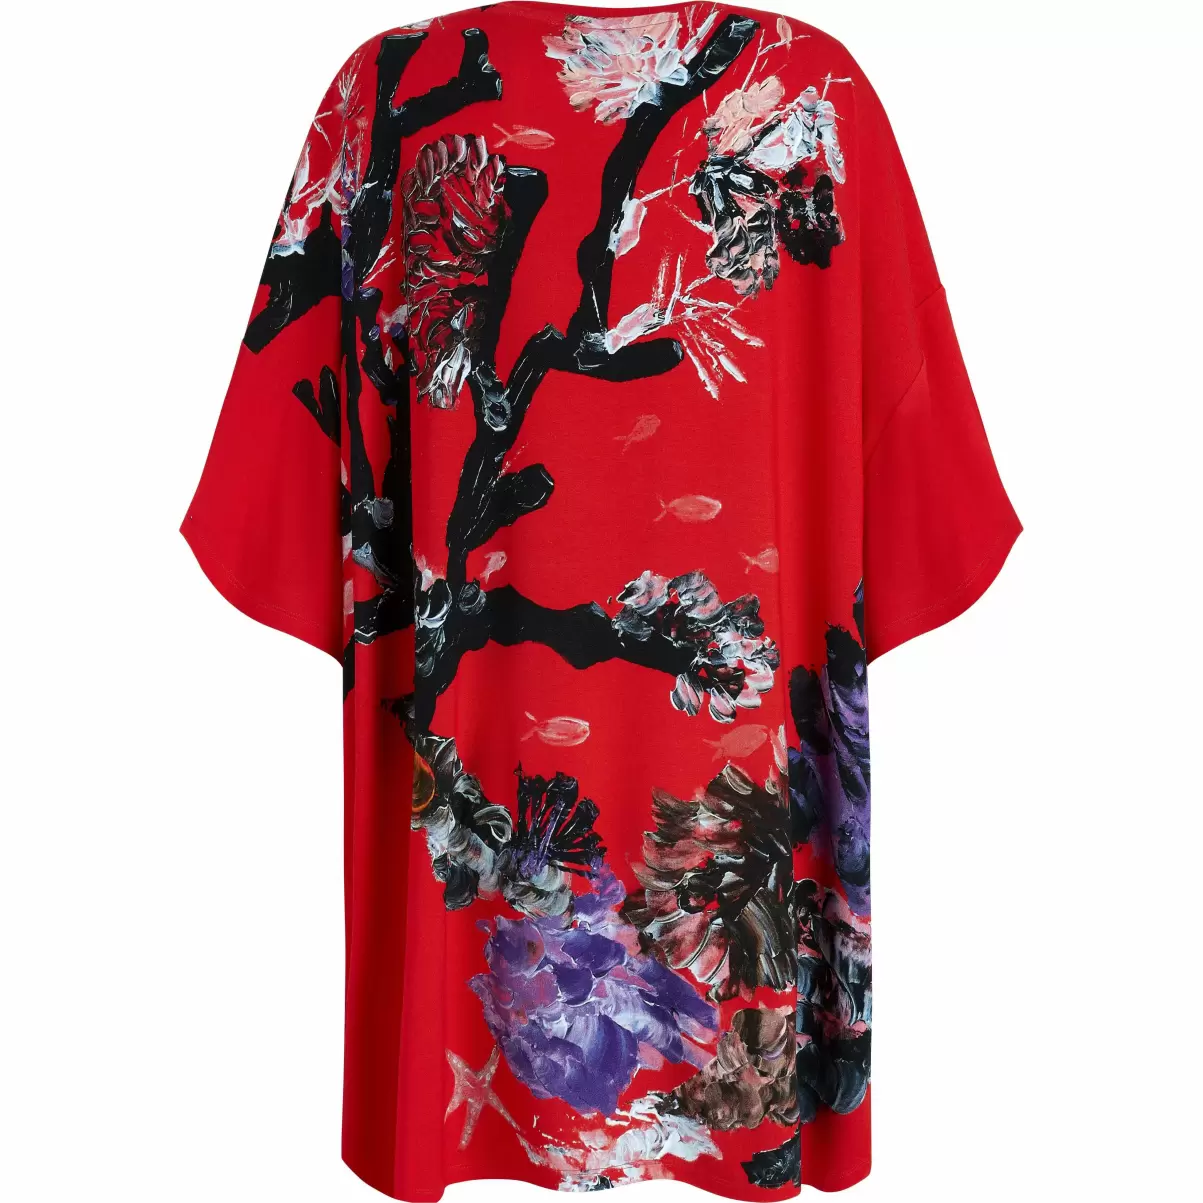 Kleider Material Damen Spring Flower Maxikleid Aus Viskose Für Damen - Vilebrequin X Patrizia Gucci Mohnrot / Rot - 4